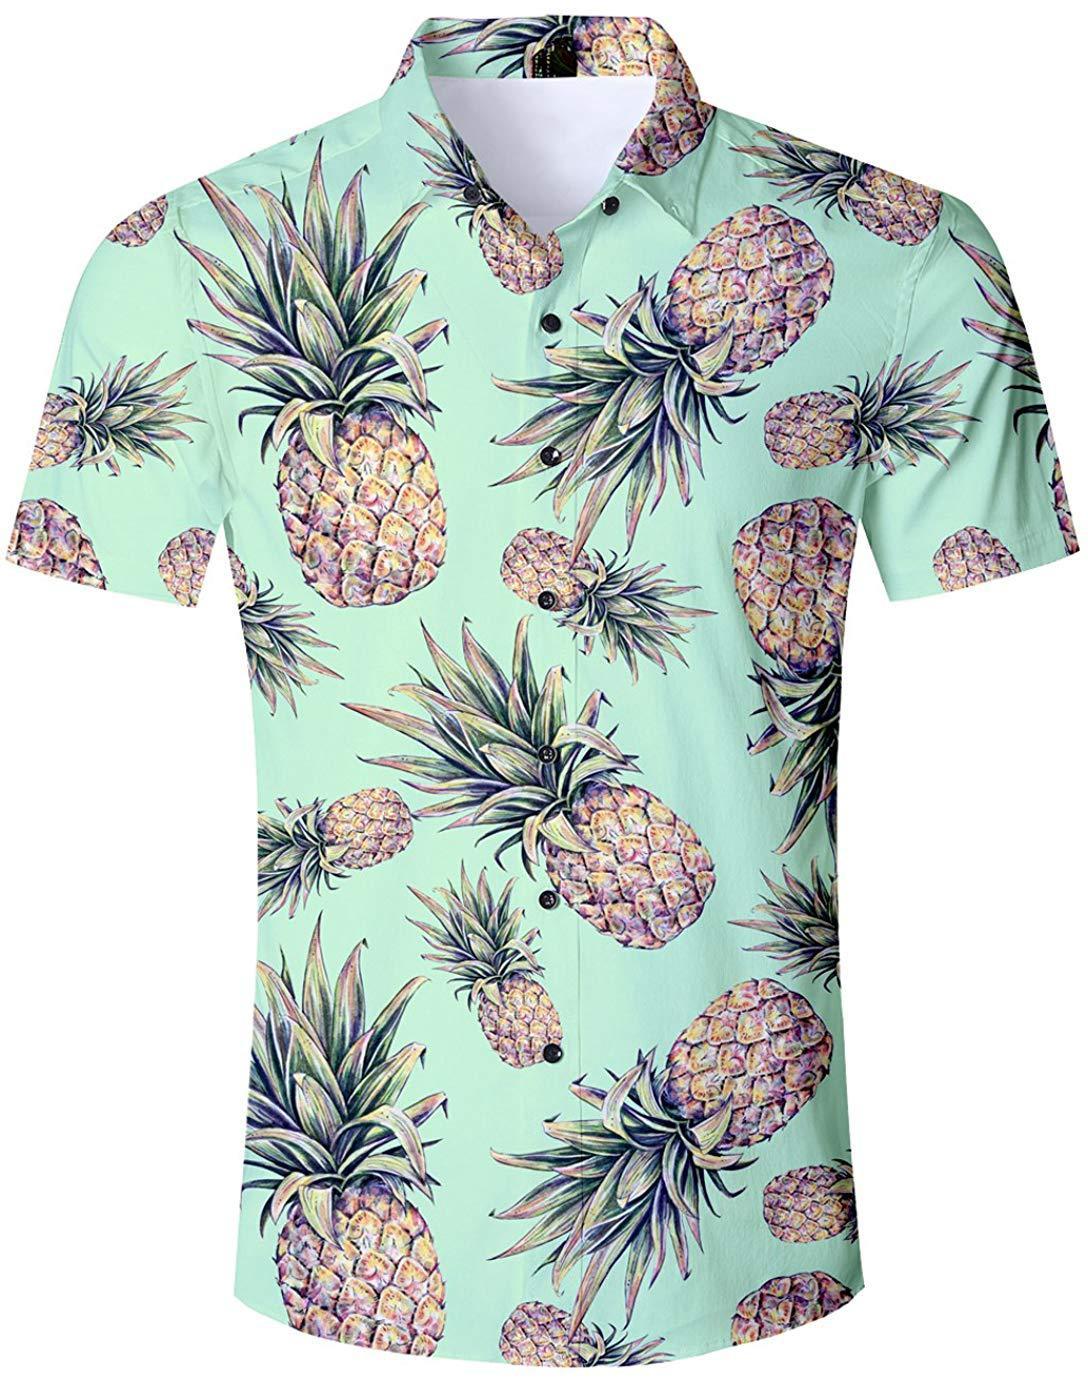 Men's Casual Shirts 3D Hawaiian Tropical Fashion